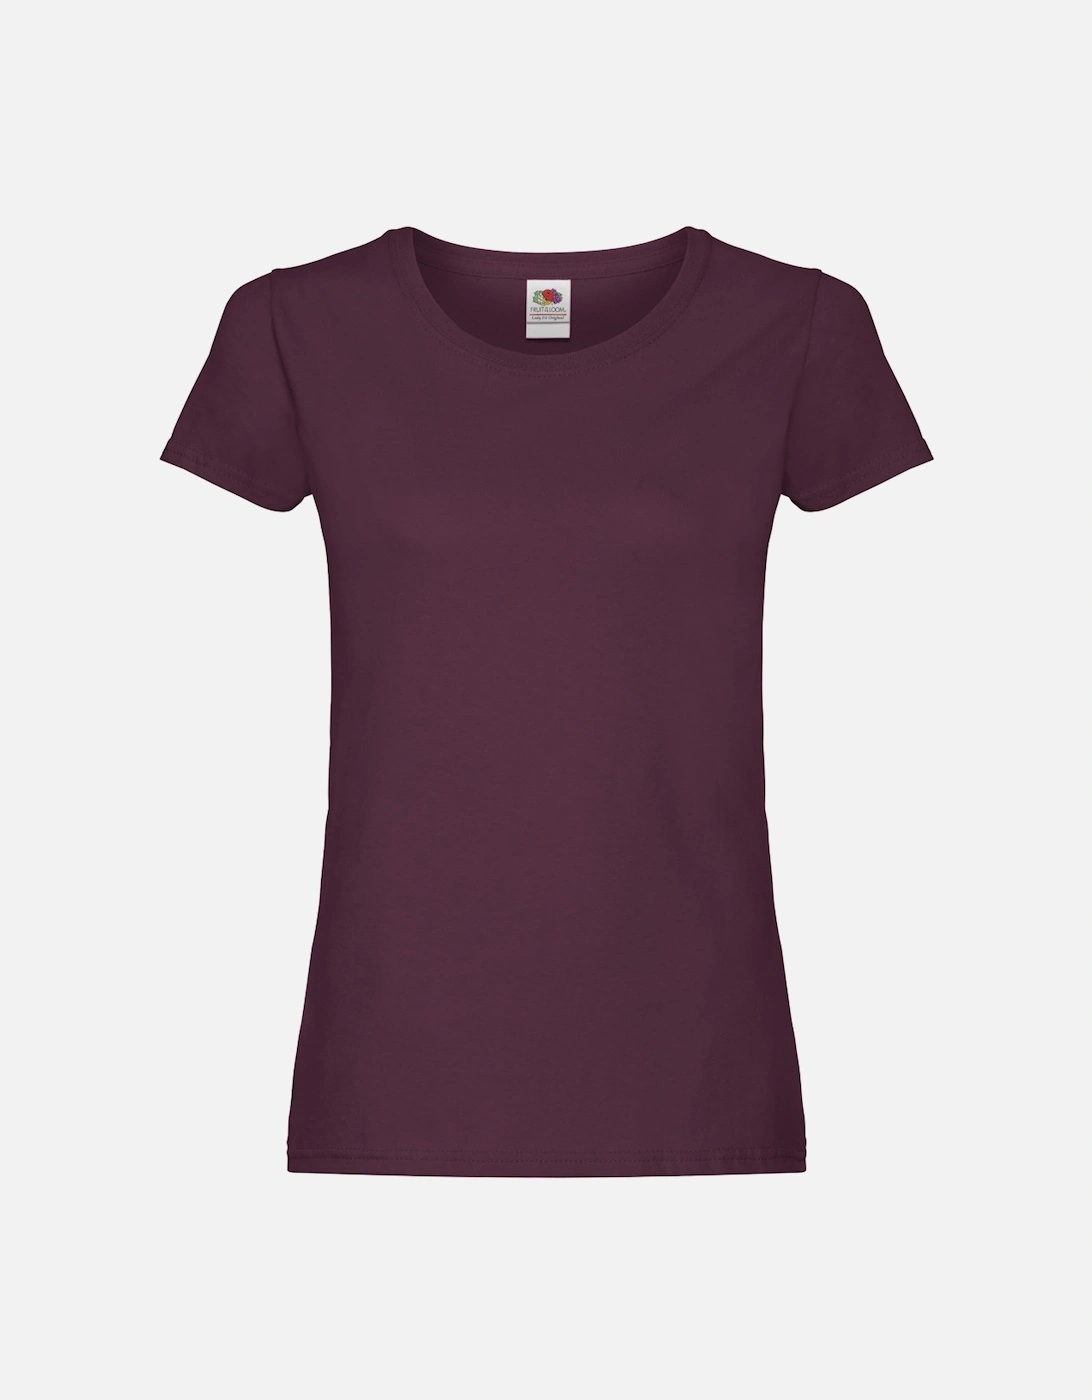 Womens/Ladies T-Shirt, 4 of 3